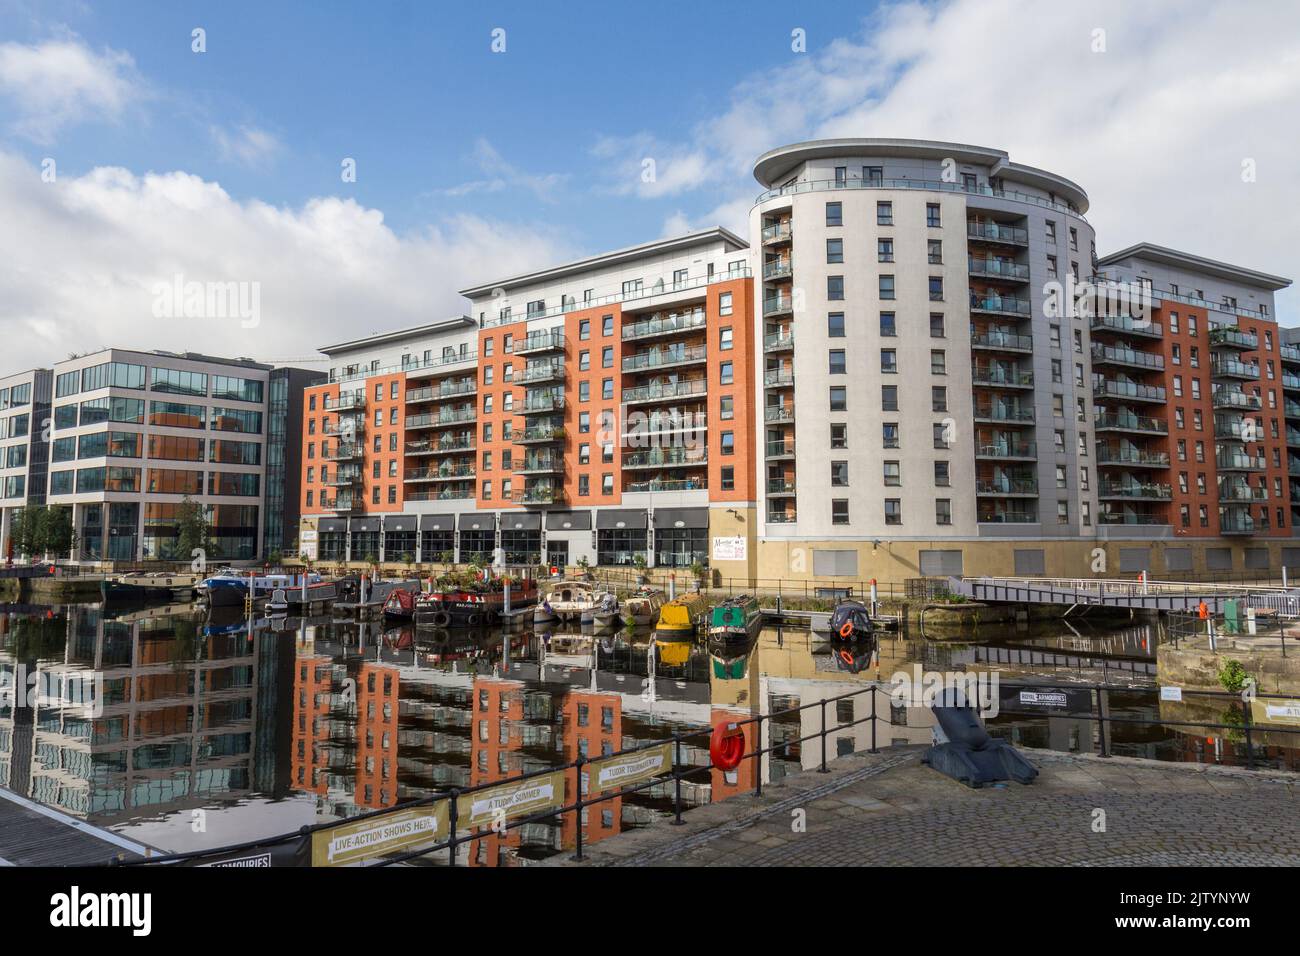 Vista generale di MacKenzie House, Leeds Dock, uno sviluppo misto con negozi, uffici e strutture per il tempo libero sul fiume Aire, Leeds, West Yorkshire, Regno Unito. Foto Stock